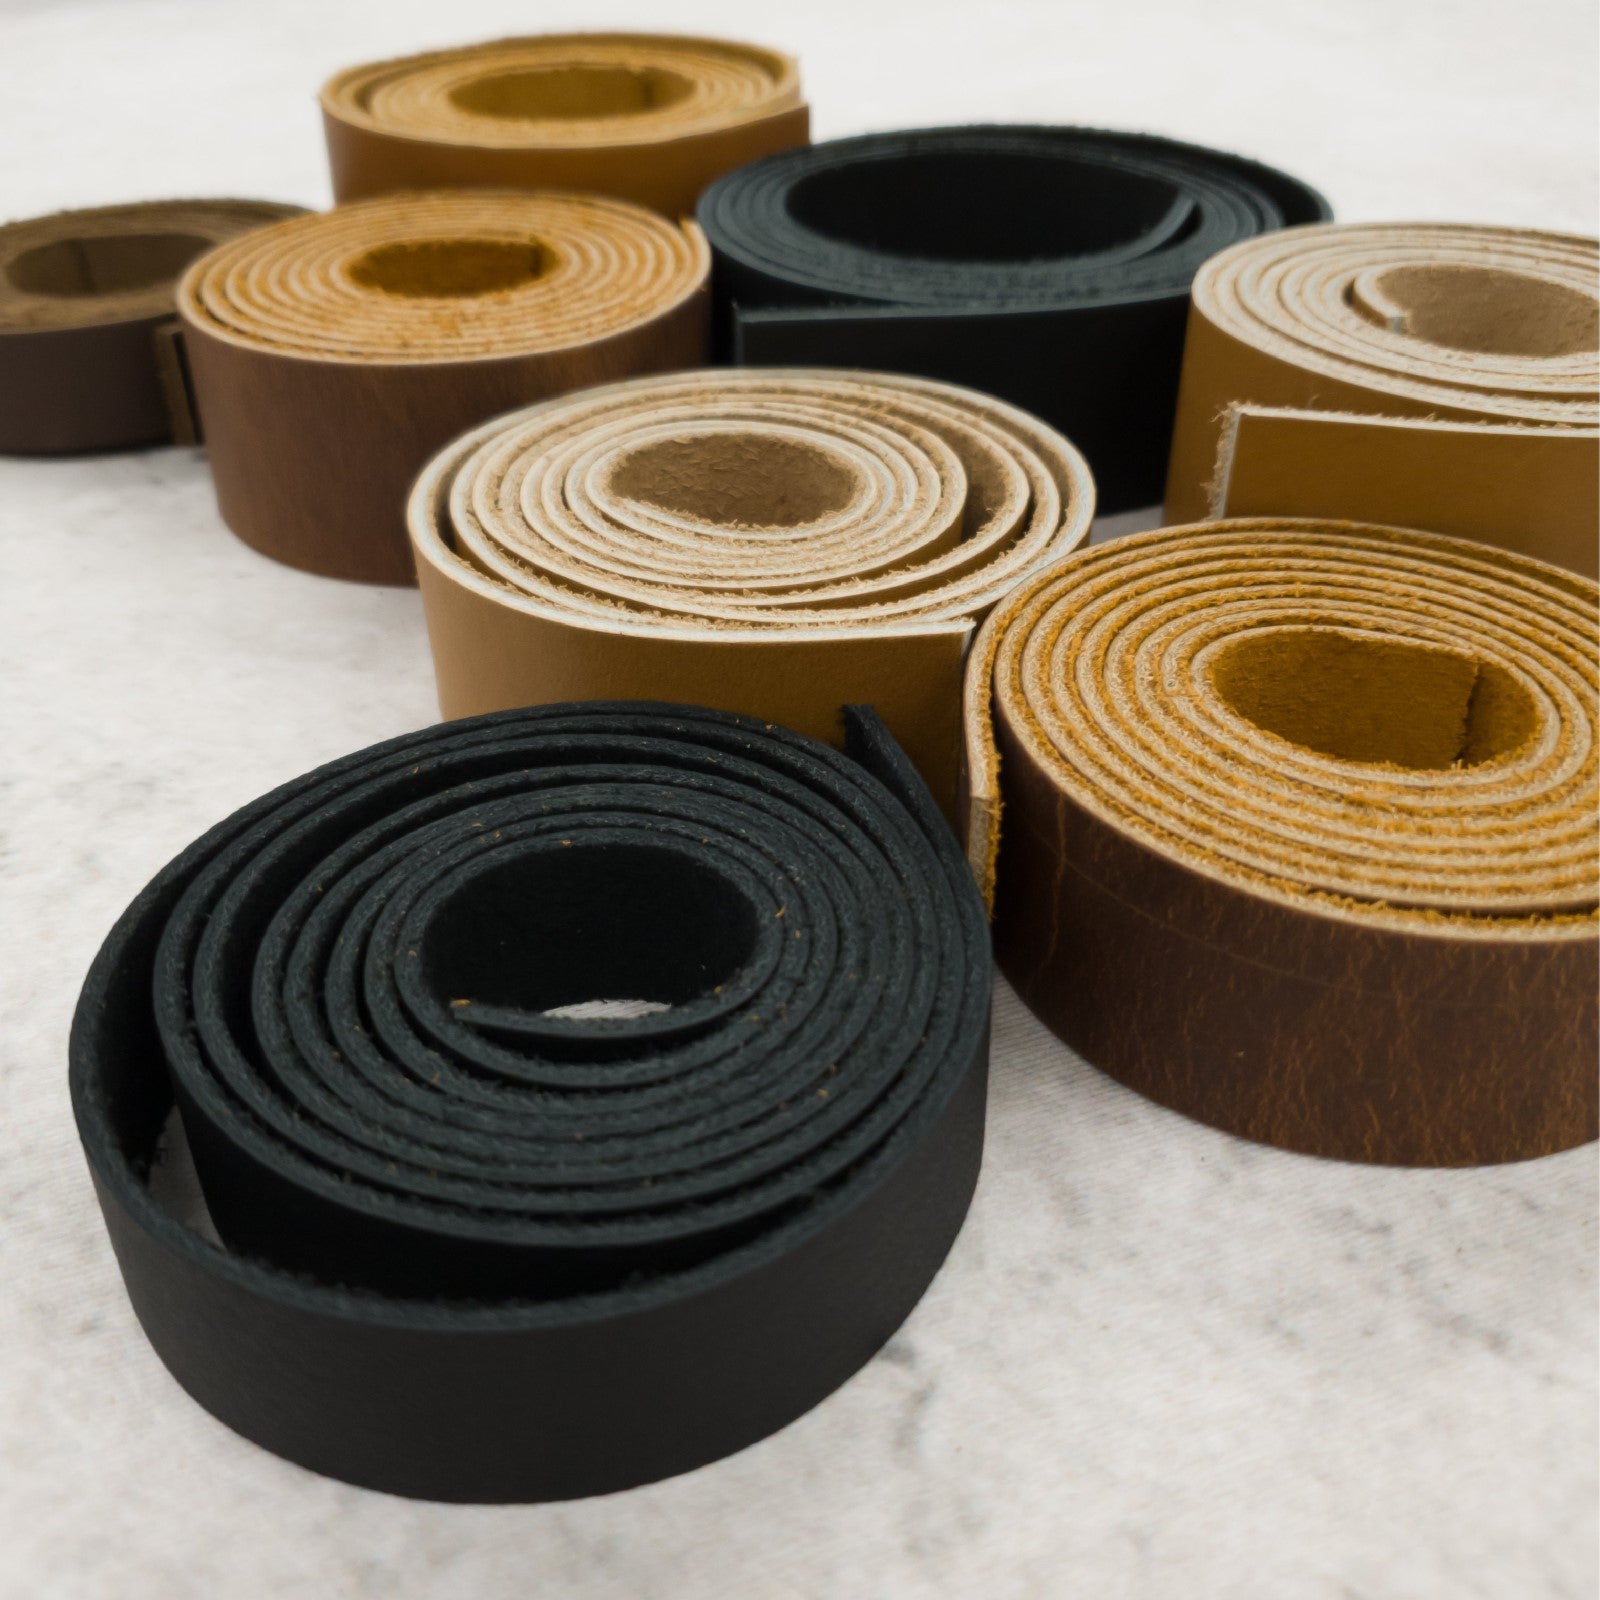 Leather Strap Texture Mix 21-0010-54 Wholesale